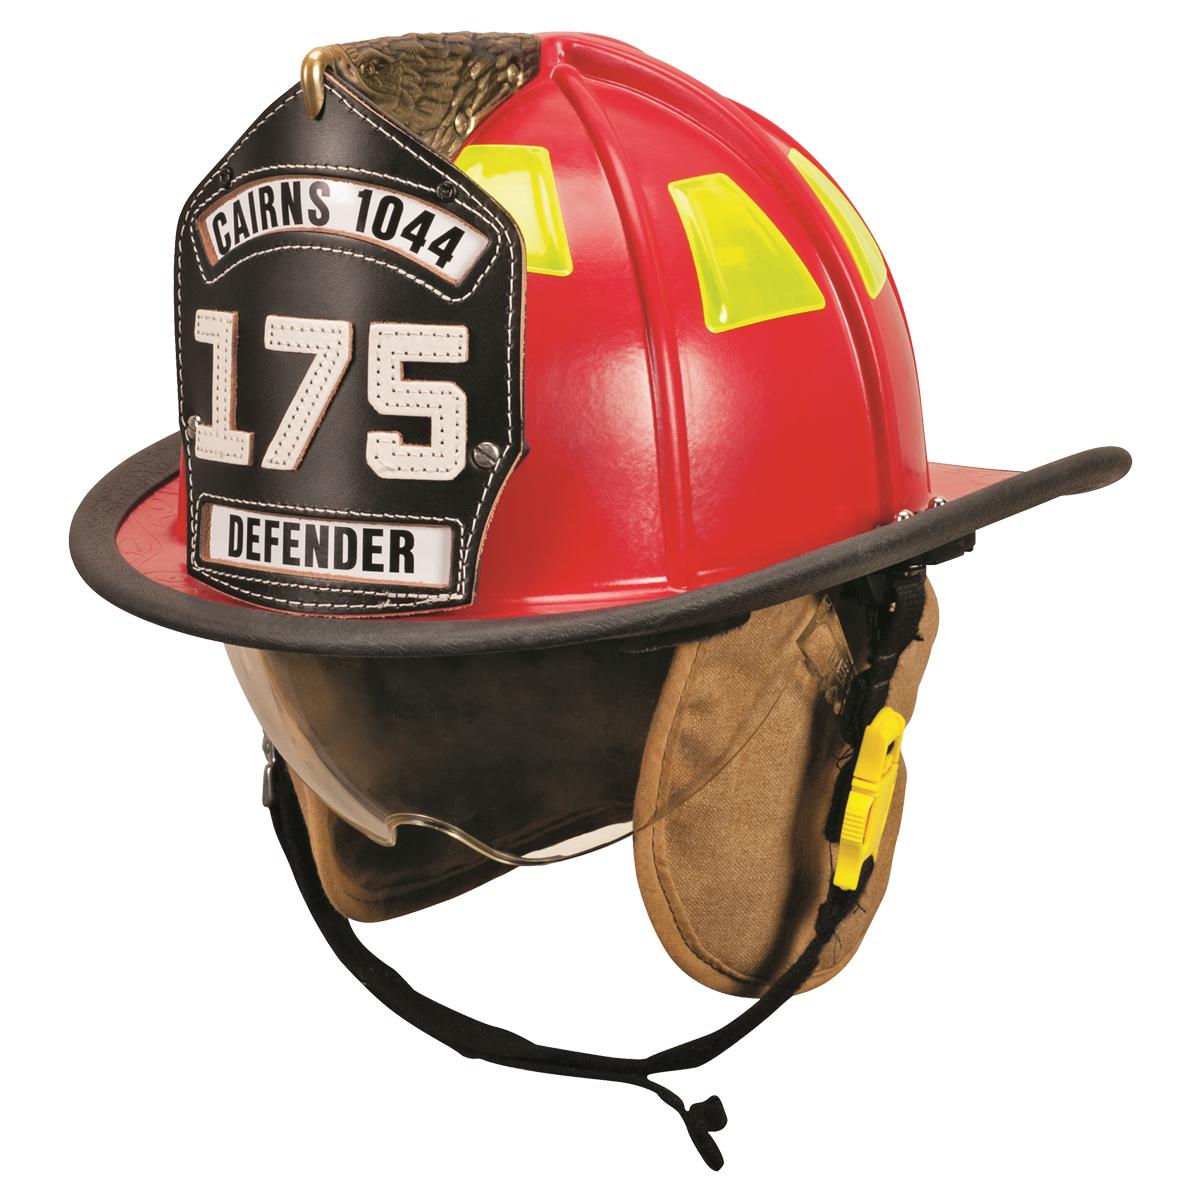 Cairns 1044 Helmet - Click to Configure